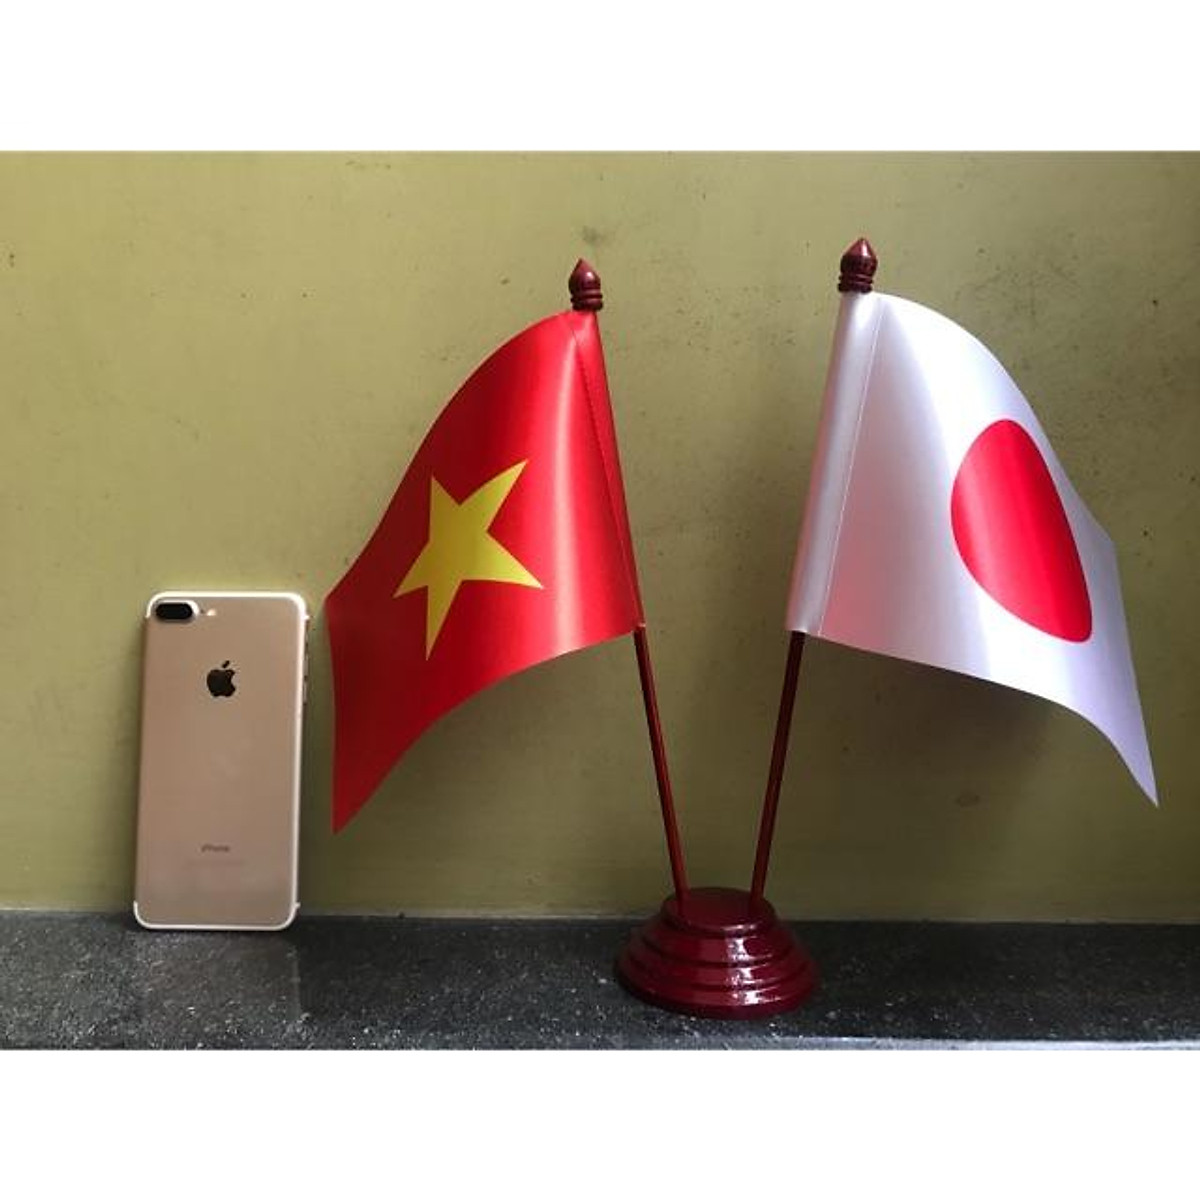 Cờ Việt Nhật để bàn: Sự kết hợp giữa hai lá cờ Việt Nam và Nhật Bản trong một chiếc cờ nhỏ được đặt trên bàn làm việc, mang lại cảm giác tự hào cho người Việt và tôn vinh những giá trị văn hóa của Nhật Bản. Đây cũng là món quà ý nghĩa dành cho những người yêu quý đất nước và văn hóa hai quốc gia.